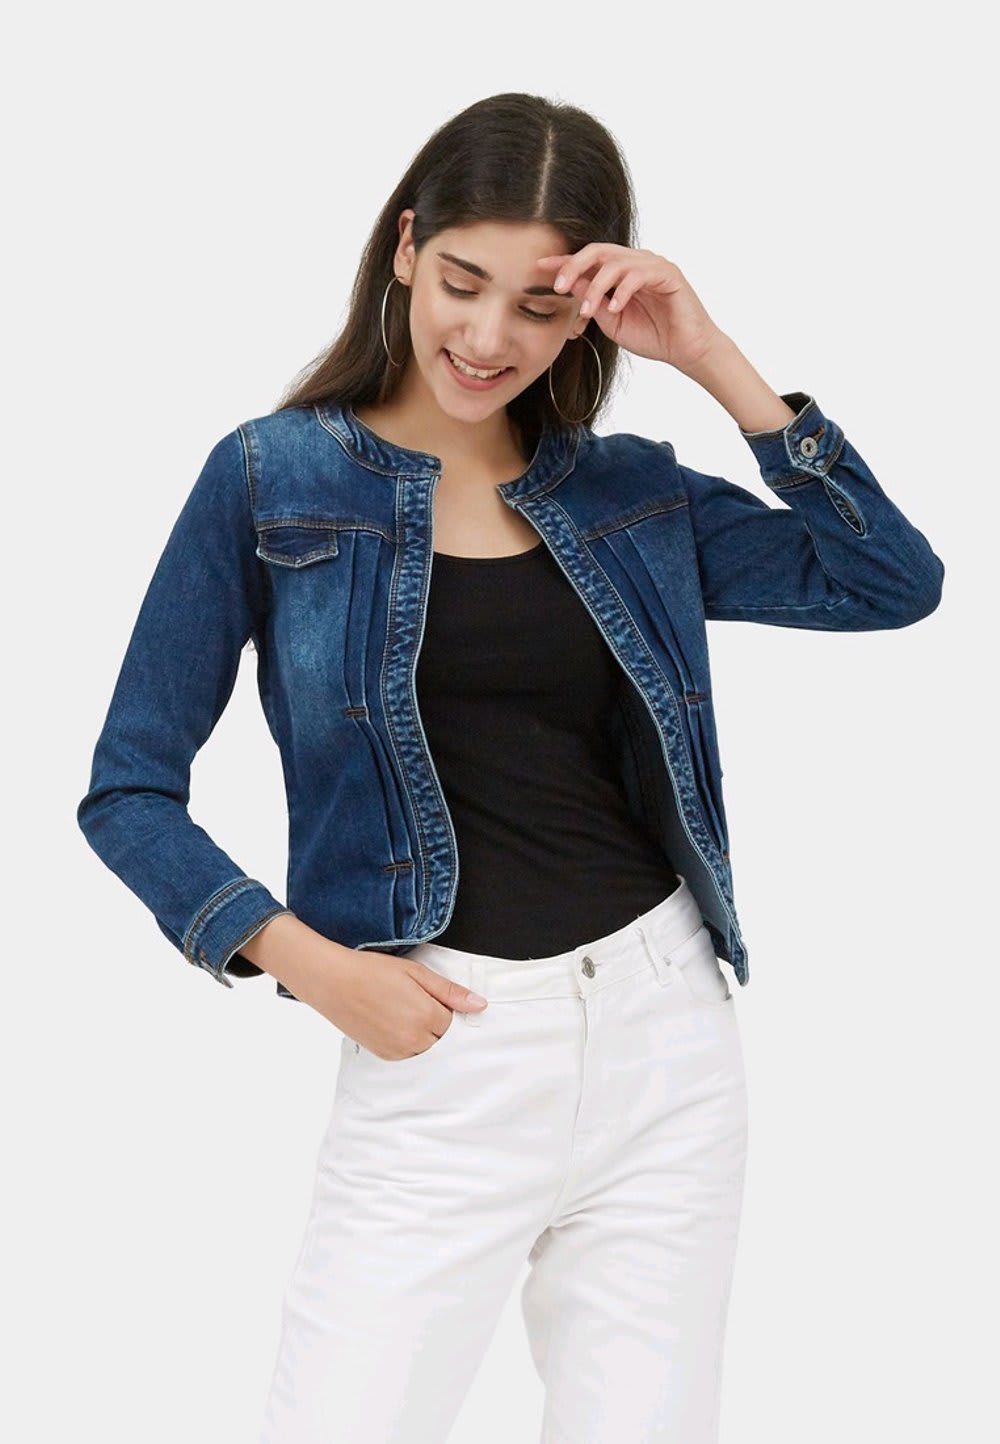 10 Jaket Jeans Wanita Branded Terbaru & Bagus 2020 - Gaya Terkini